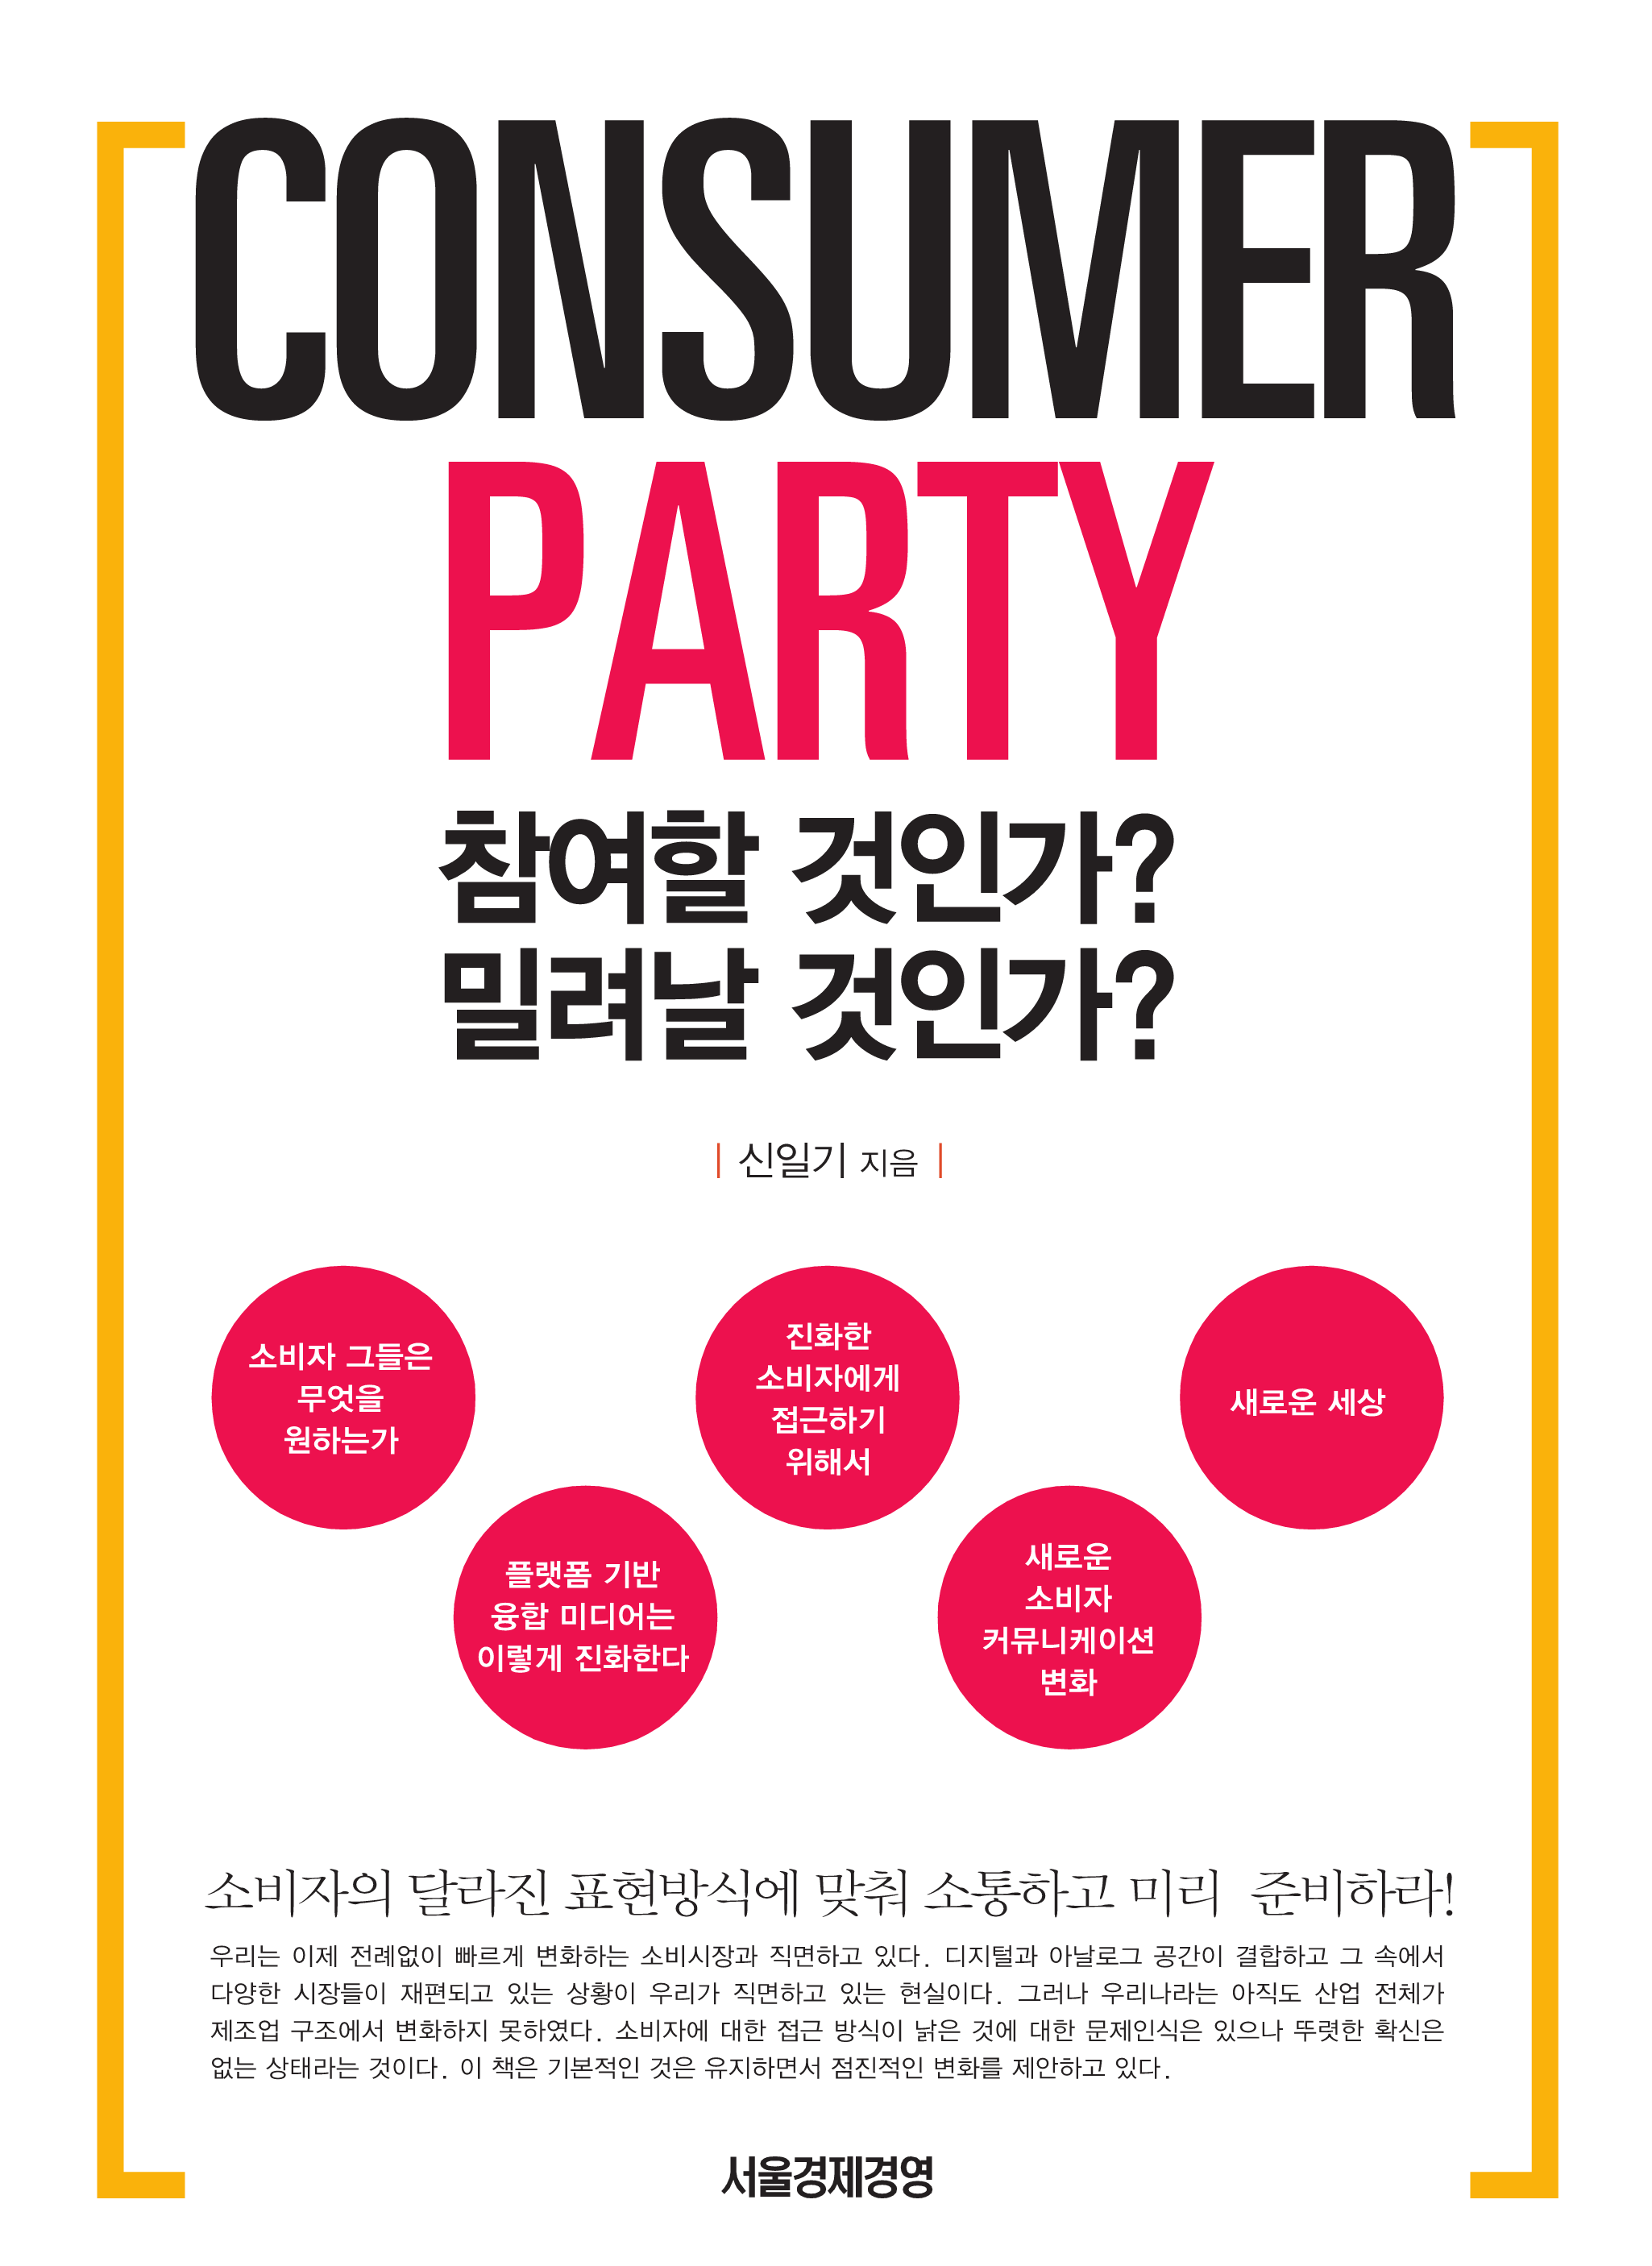 Consumer Party: 참여할 것인가? 밀려날 것인가?